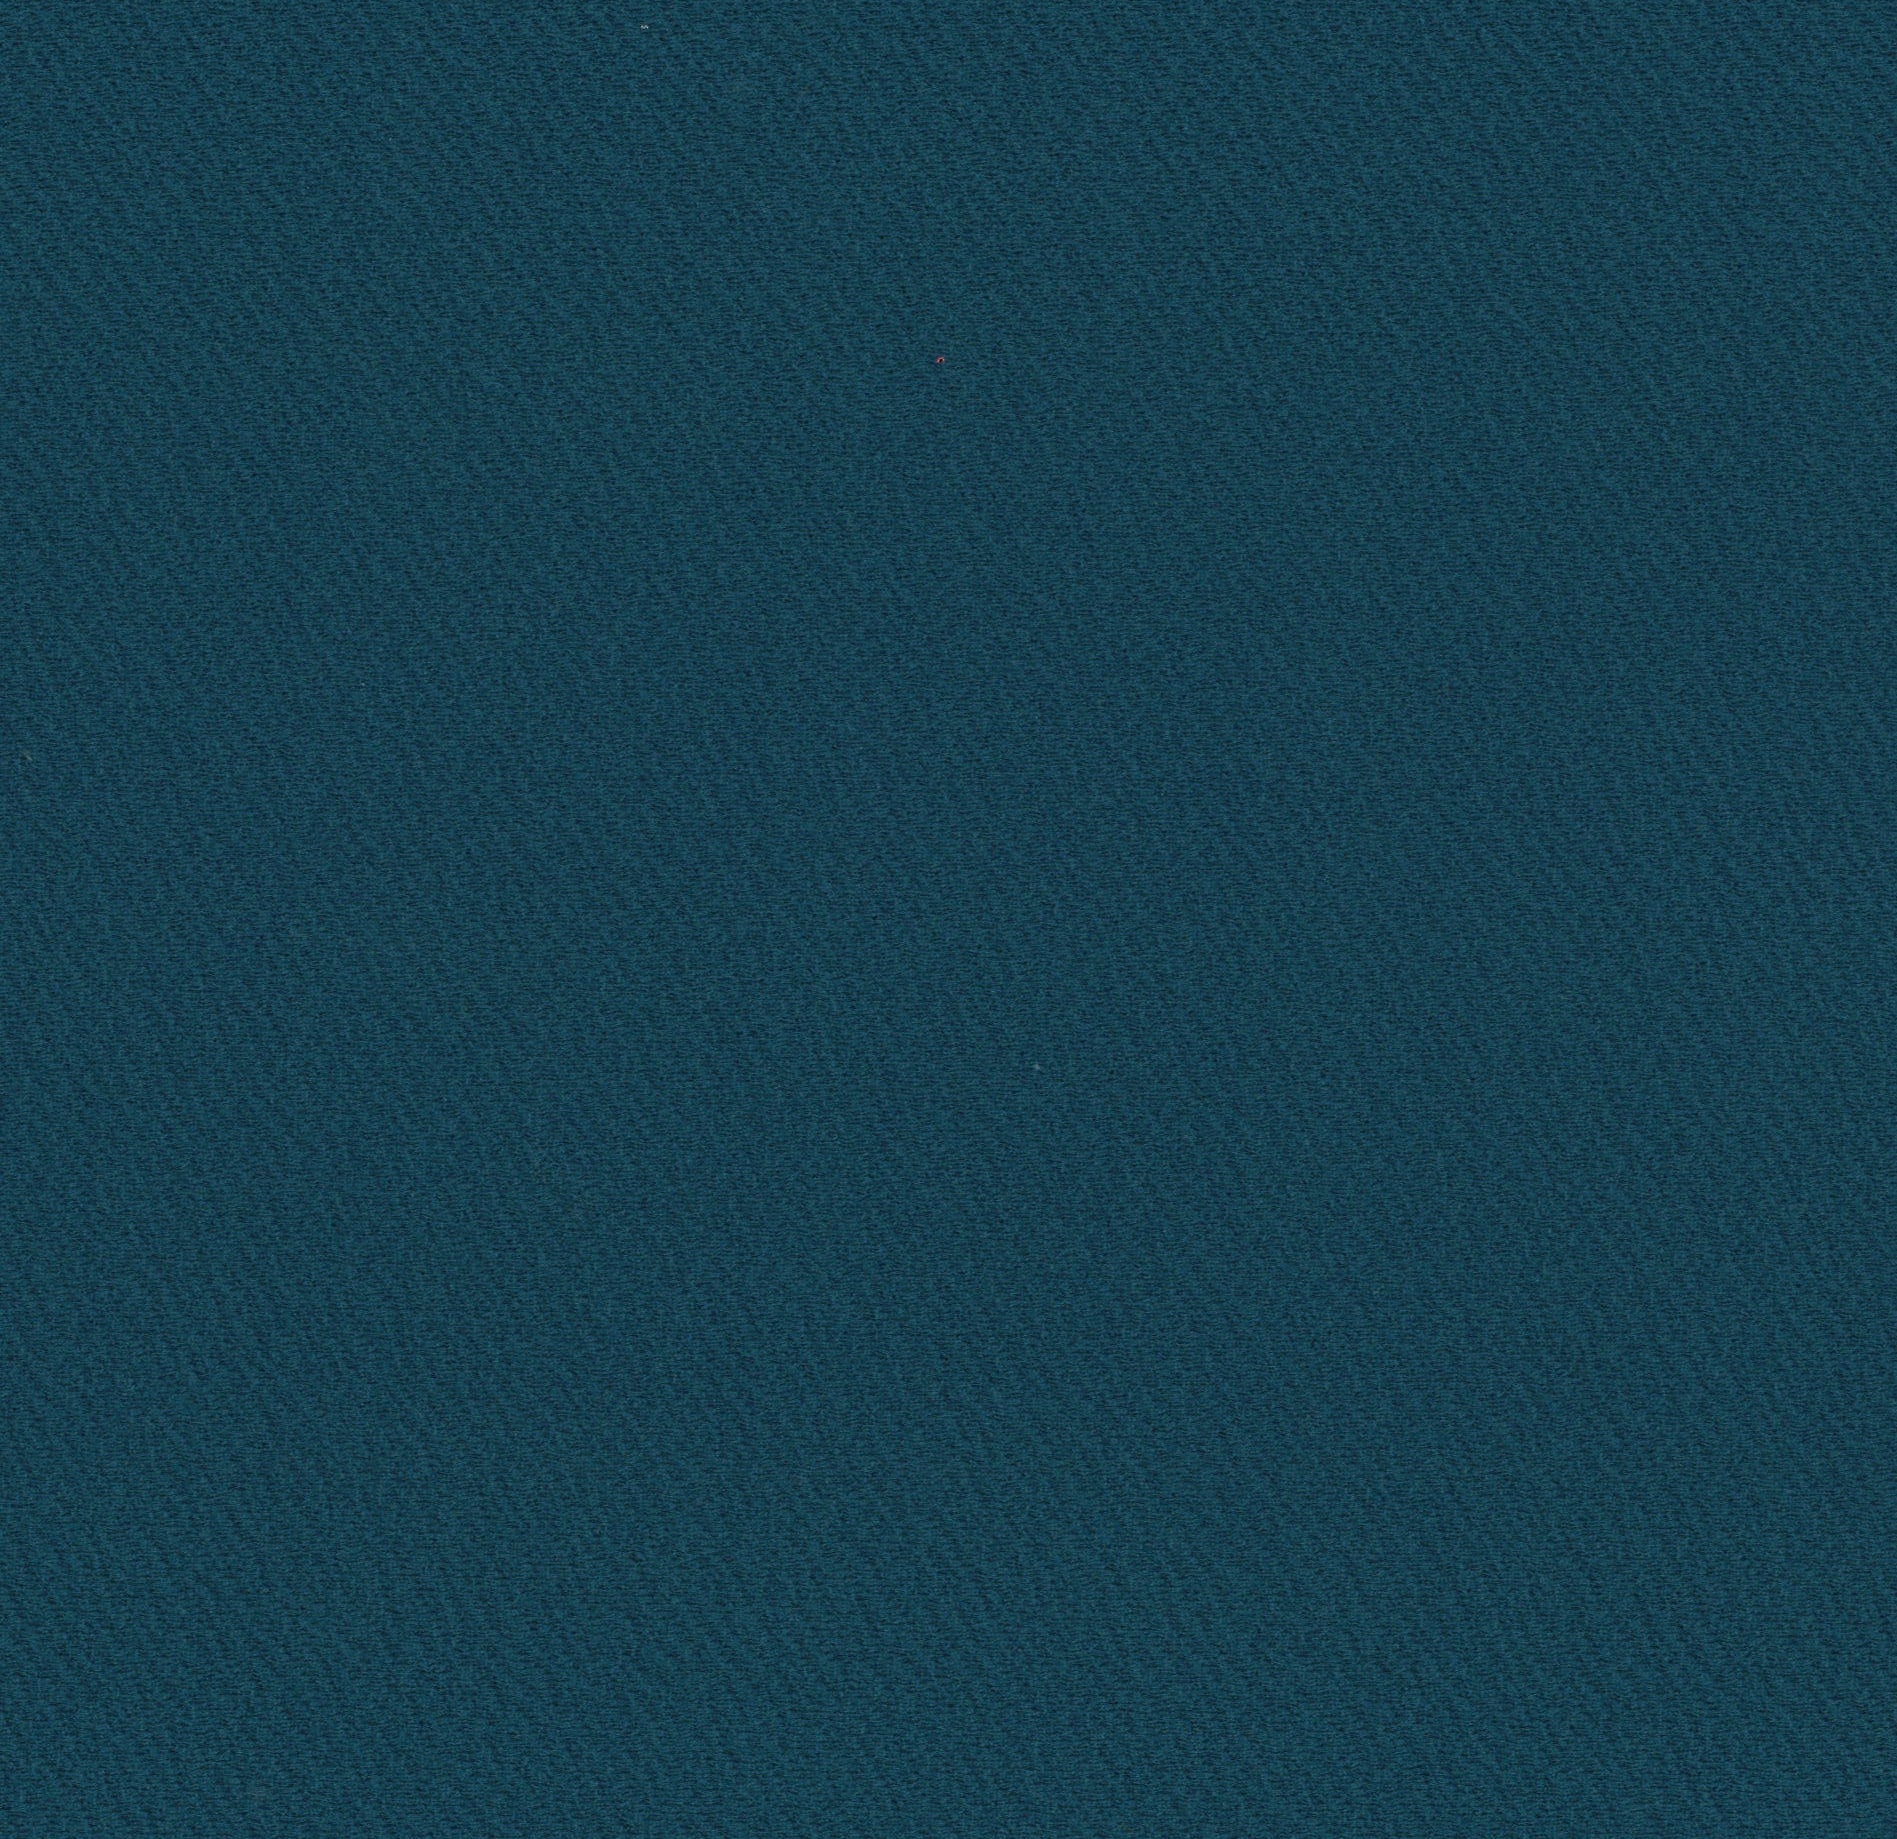 13018-10 Teal Riverpool Jacquard Plain Dyed Blend 260g/yd 58&quot; blend blue jacquard knit plain dyed polyester spandex Solid Color, Jacquard - knit fabric - woven fabric - fabric company - fabric wholesale - fabric b2b - fabric factory - high quality fabric - hong kong fabric - fabric hk - acetate fabric - cotton fabric - linen fabric - metallic fabric - nylon fabric - polyester fabric - spandex fabric - chun wing hing - cwh hk - fabric worldwide ship - 針織布 - 梳織布 - 布料公司- 布料批發 - 香港布料 - 秦榮興